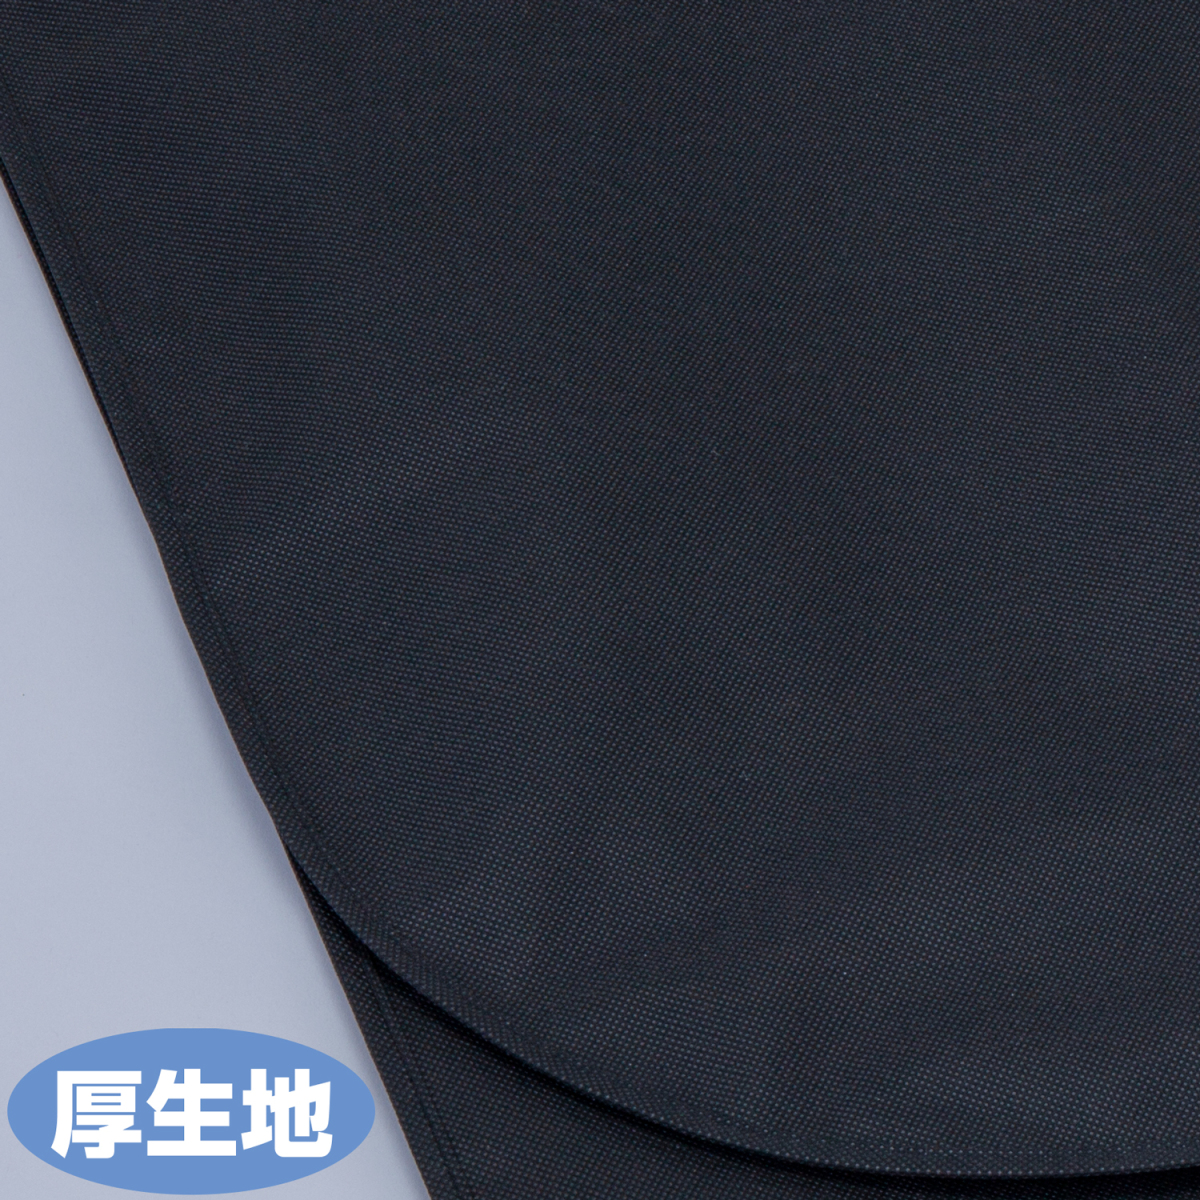  европейская одежда покрытие толстый 3 листов комплект костюм размер нетканый материал чёрный ga- men to одежда покрытие костюм покрытие пыль исключая . "дышит" хороший Astro 605-29